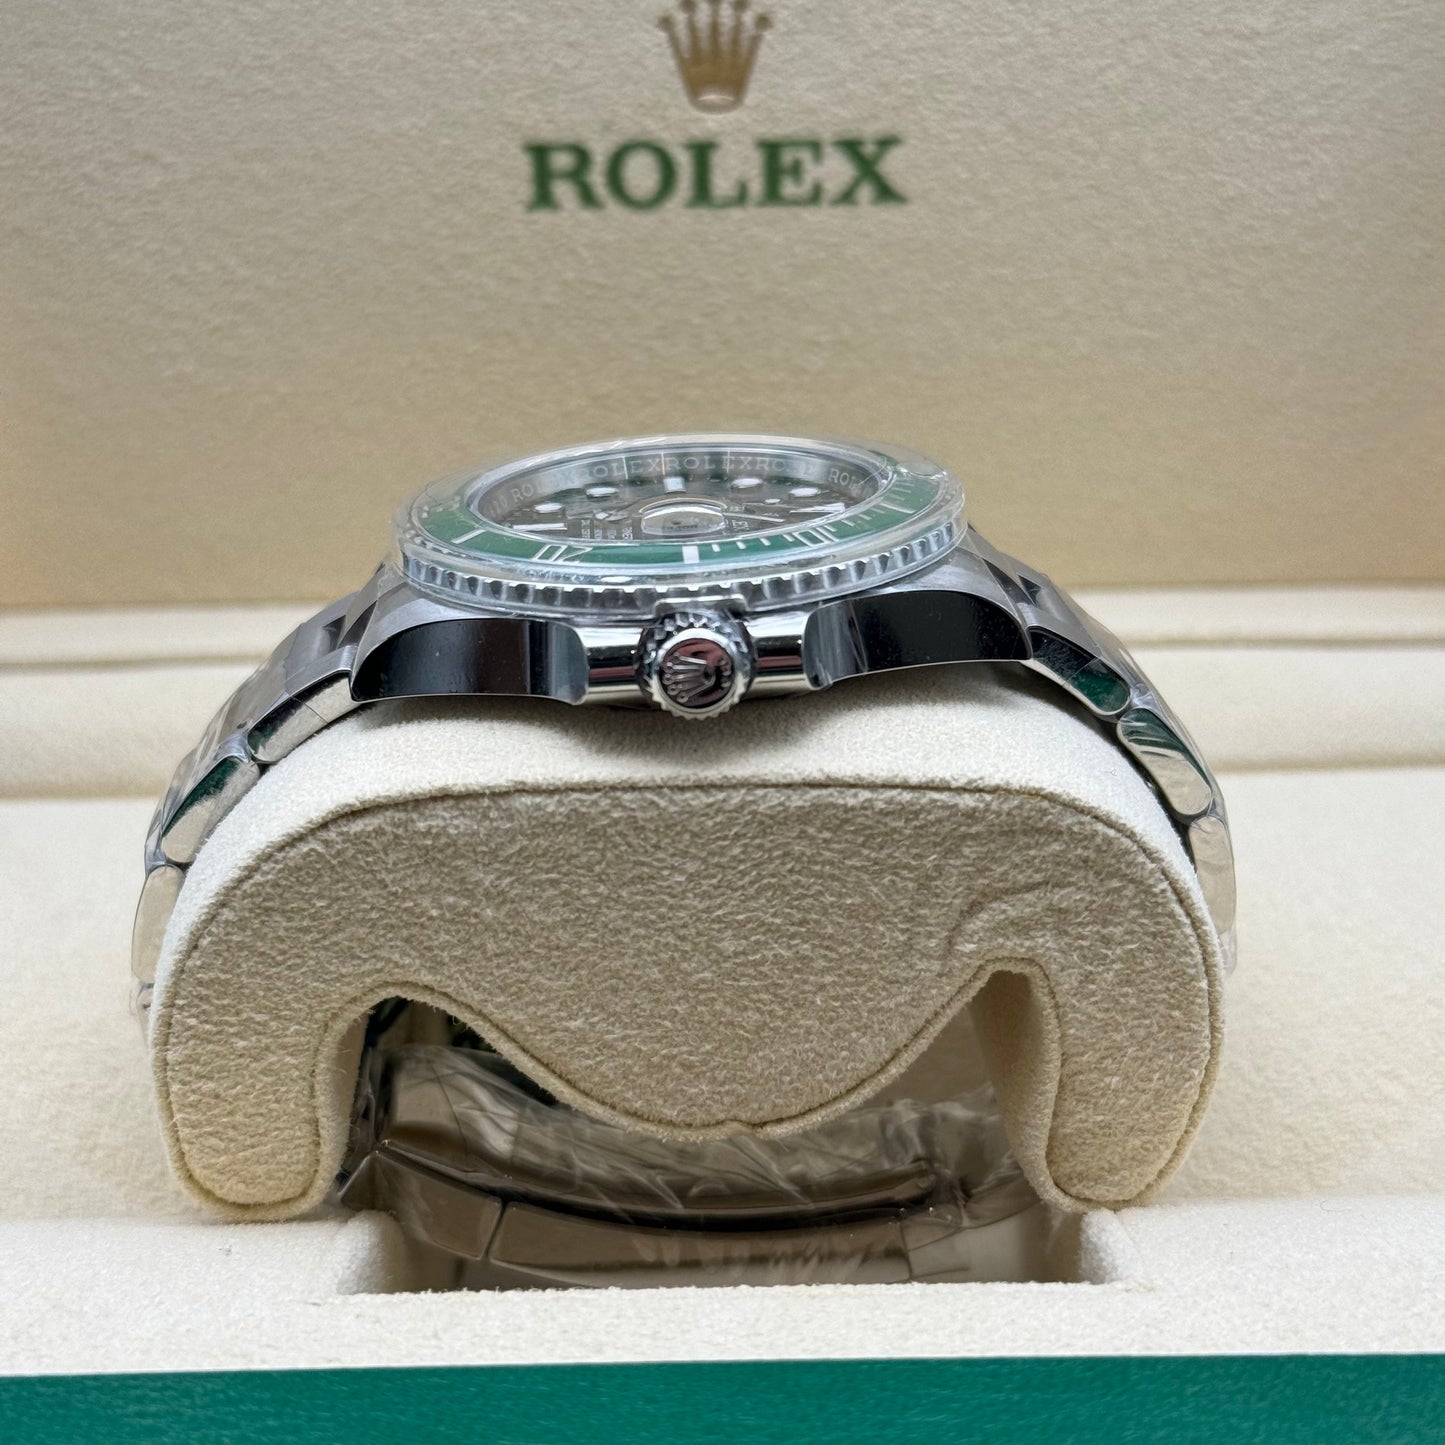 Rolex Submariner Hulk 40mm Date Ref 116610LV 2017 Regal - Hatton Garden Jewellers